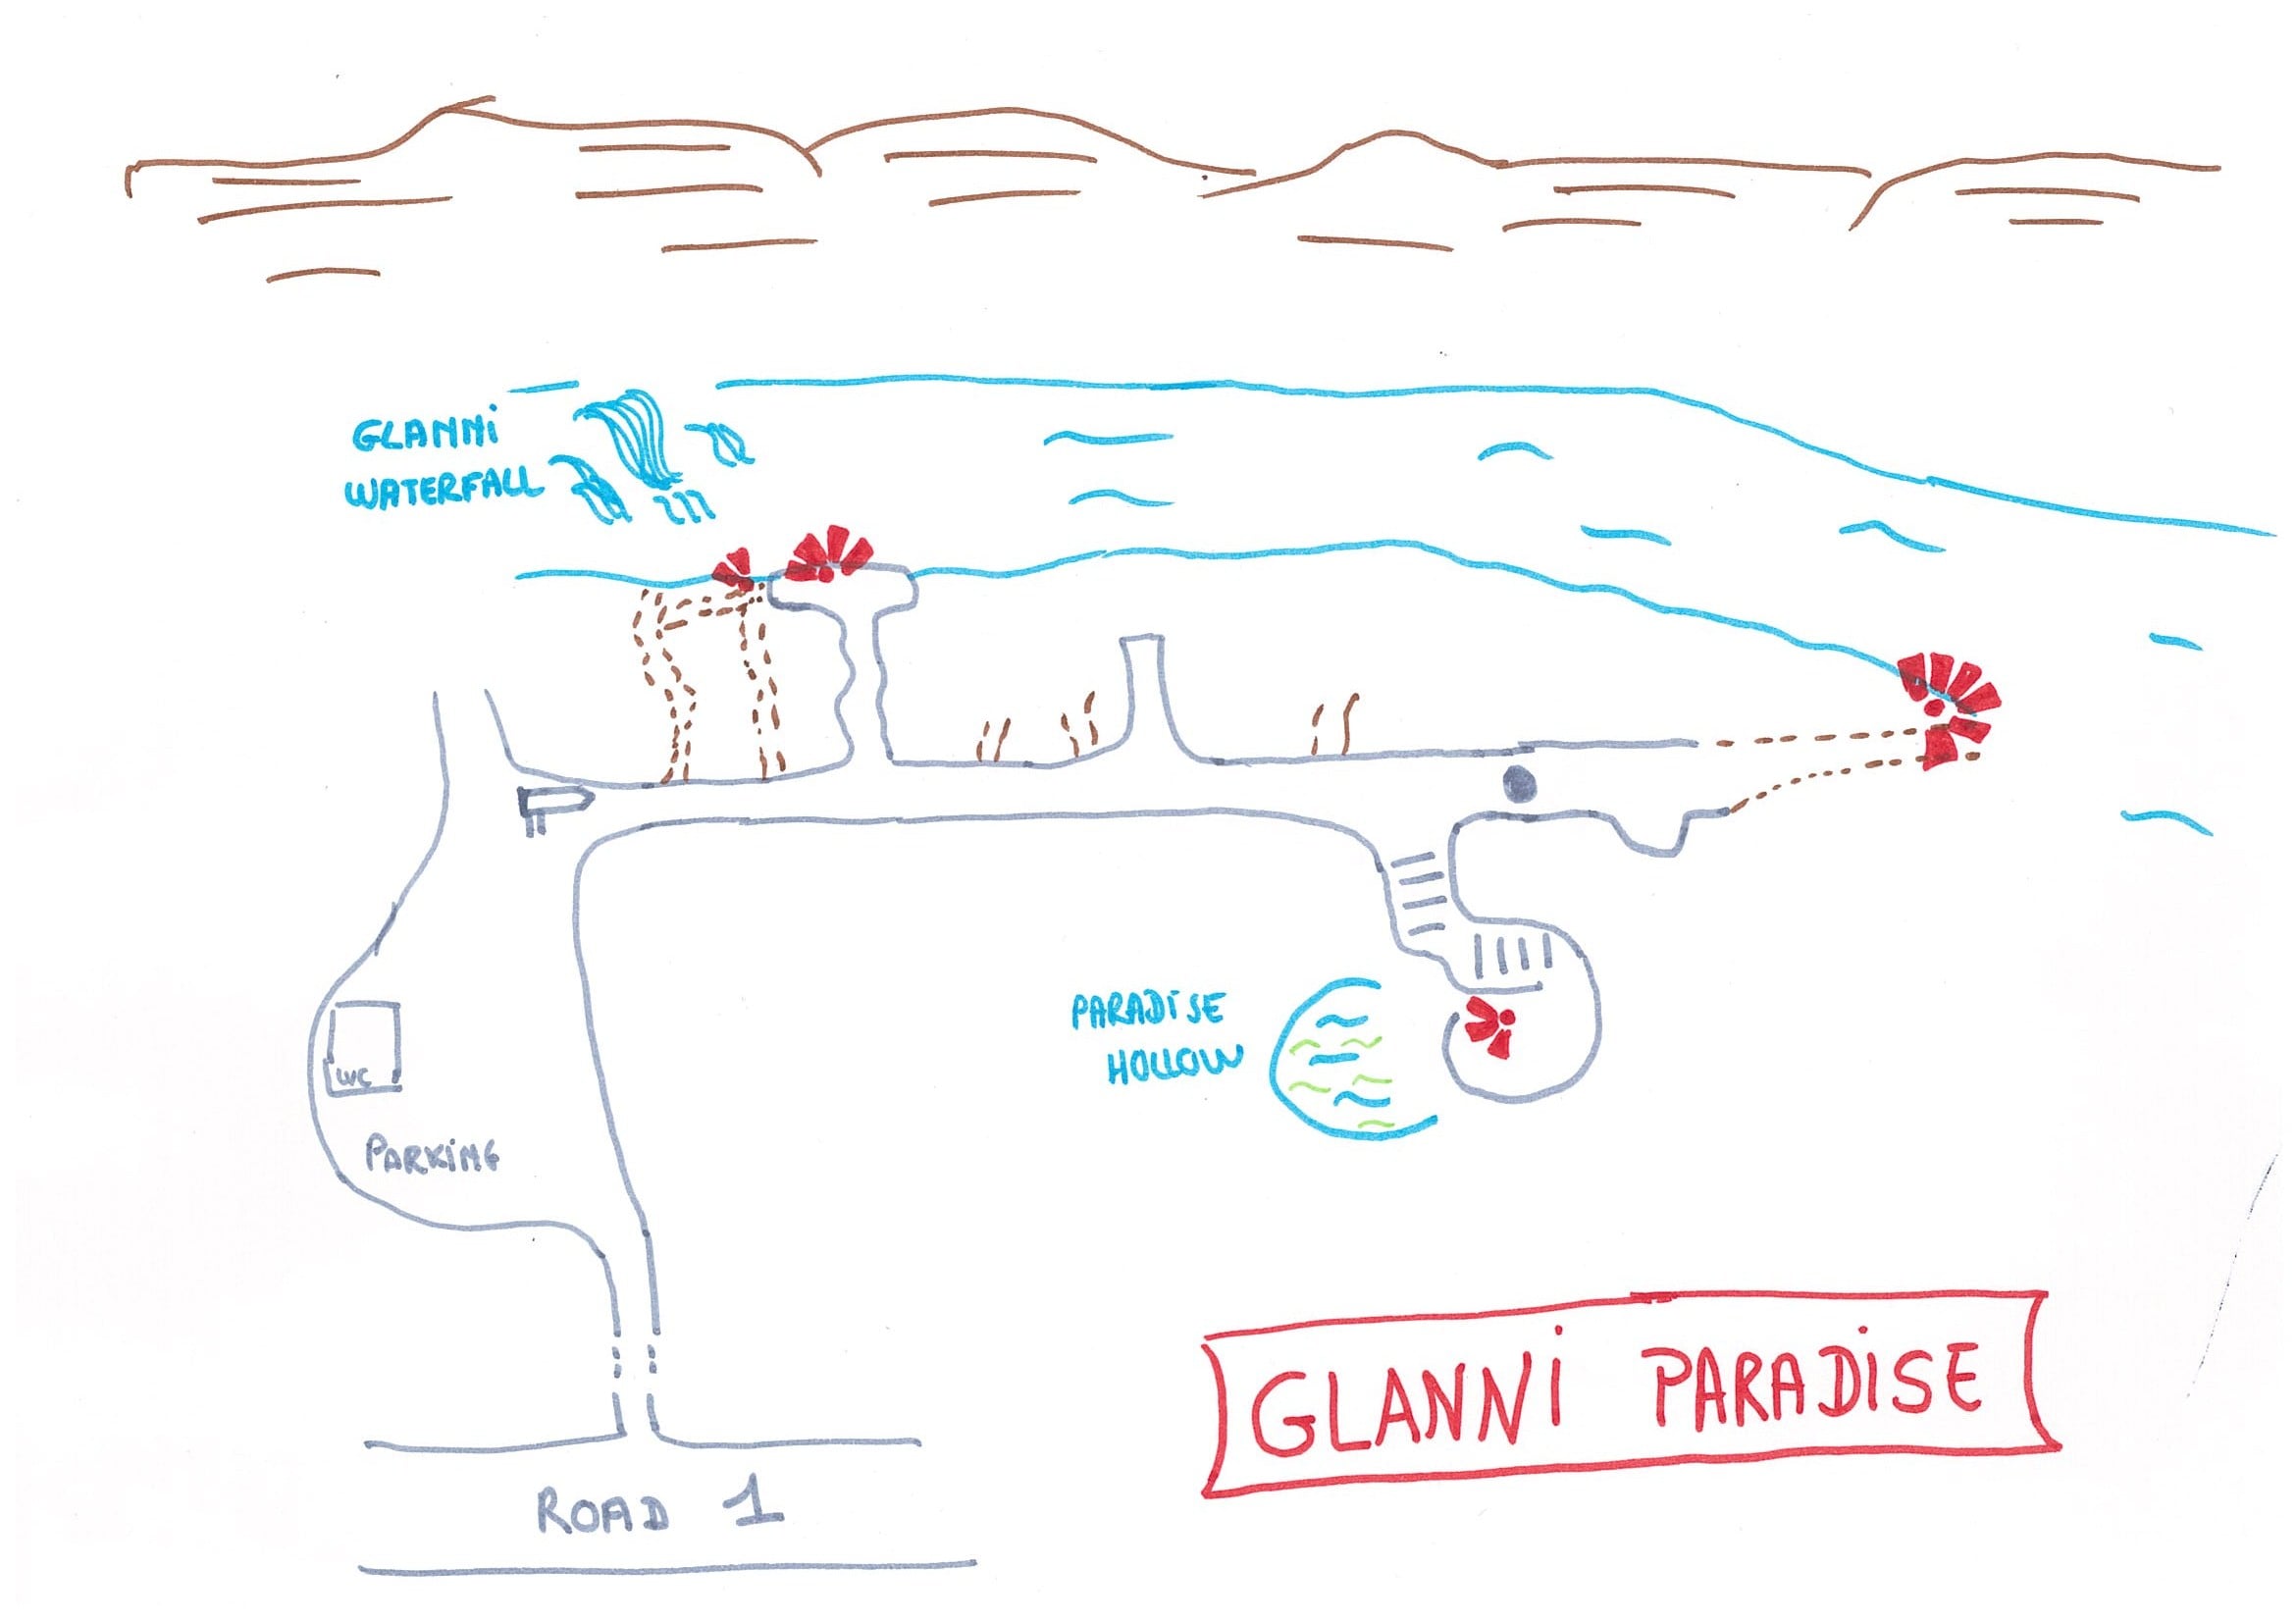 Mapa - Glanni Paradise, Islândia